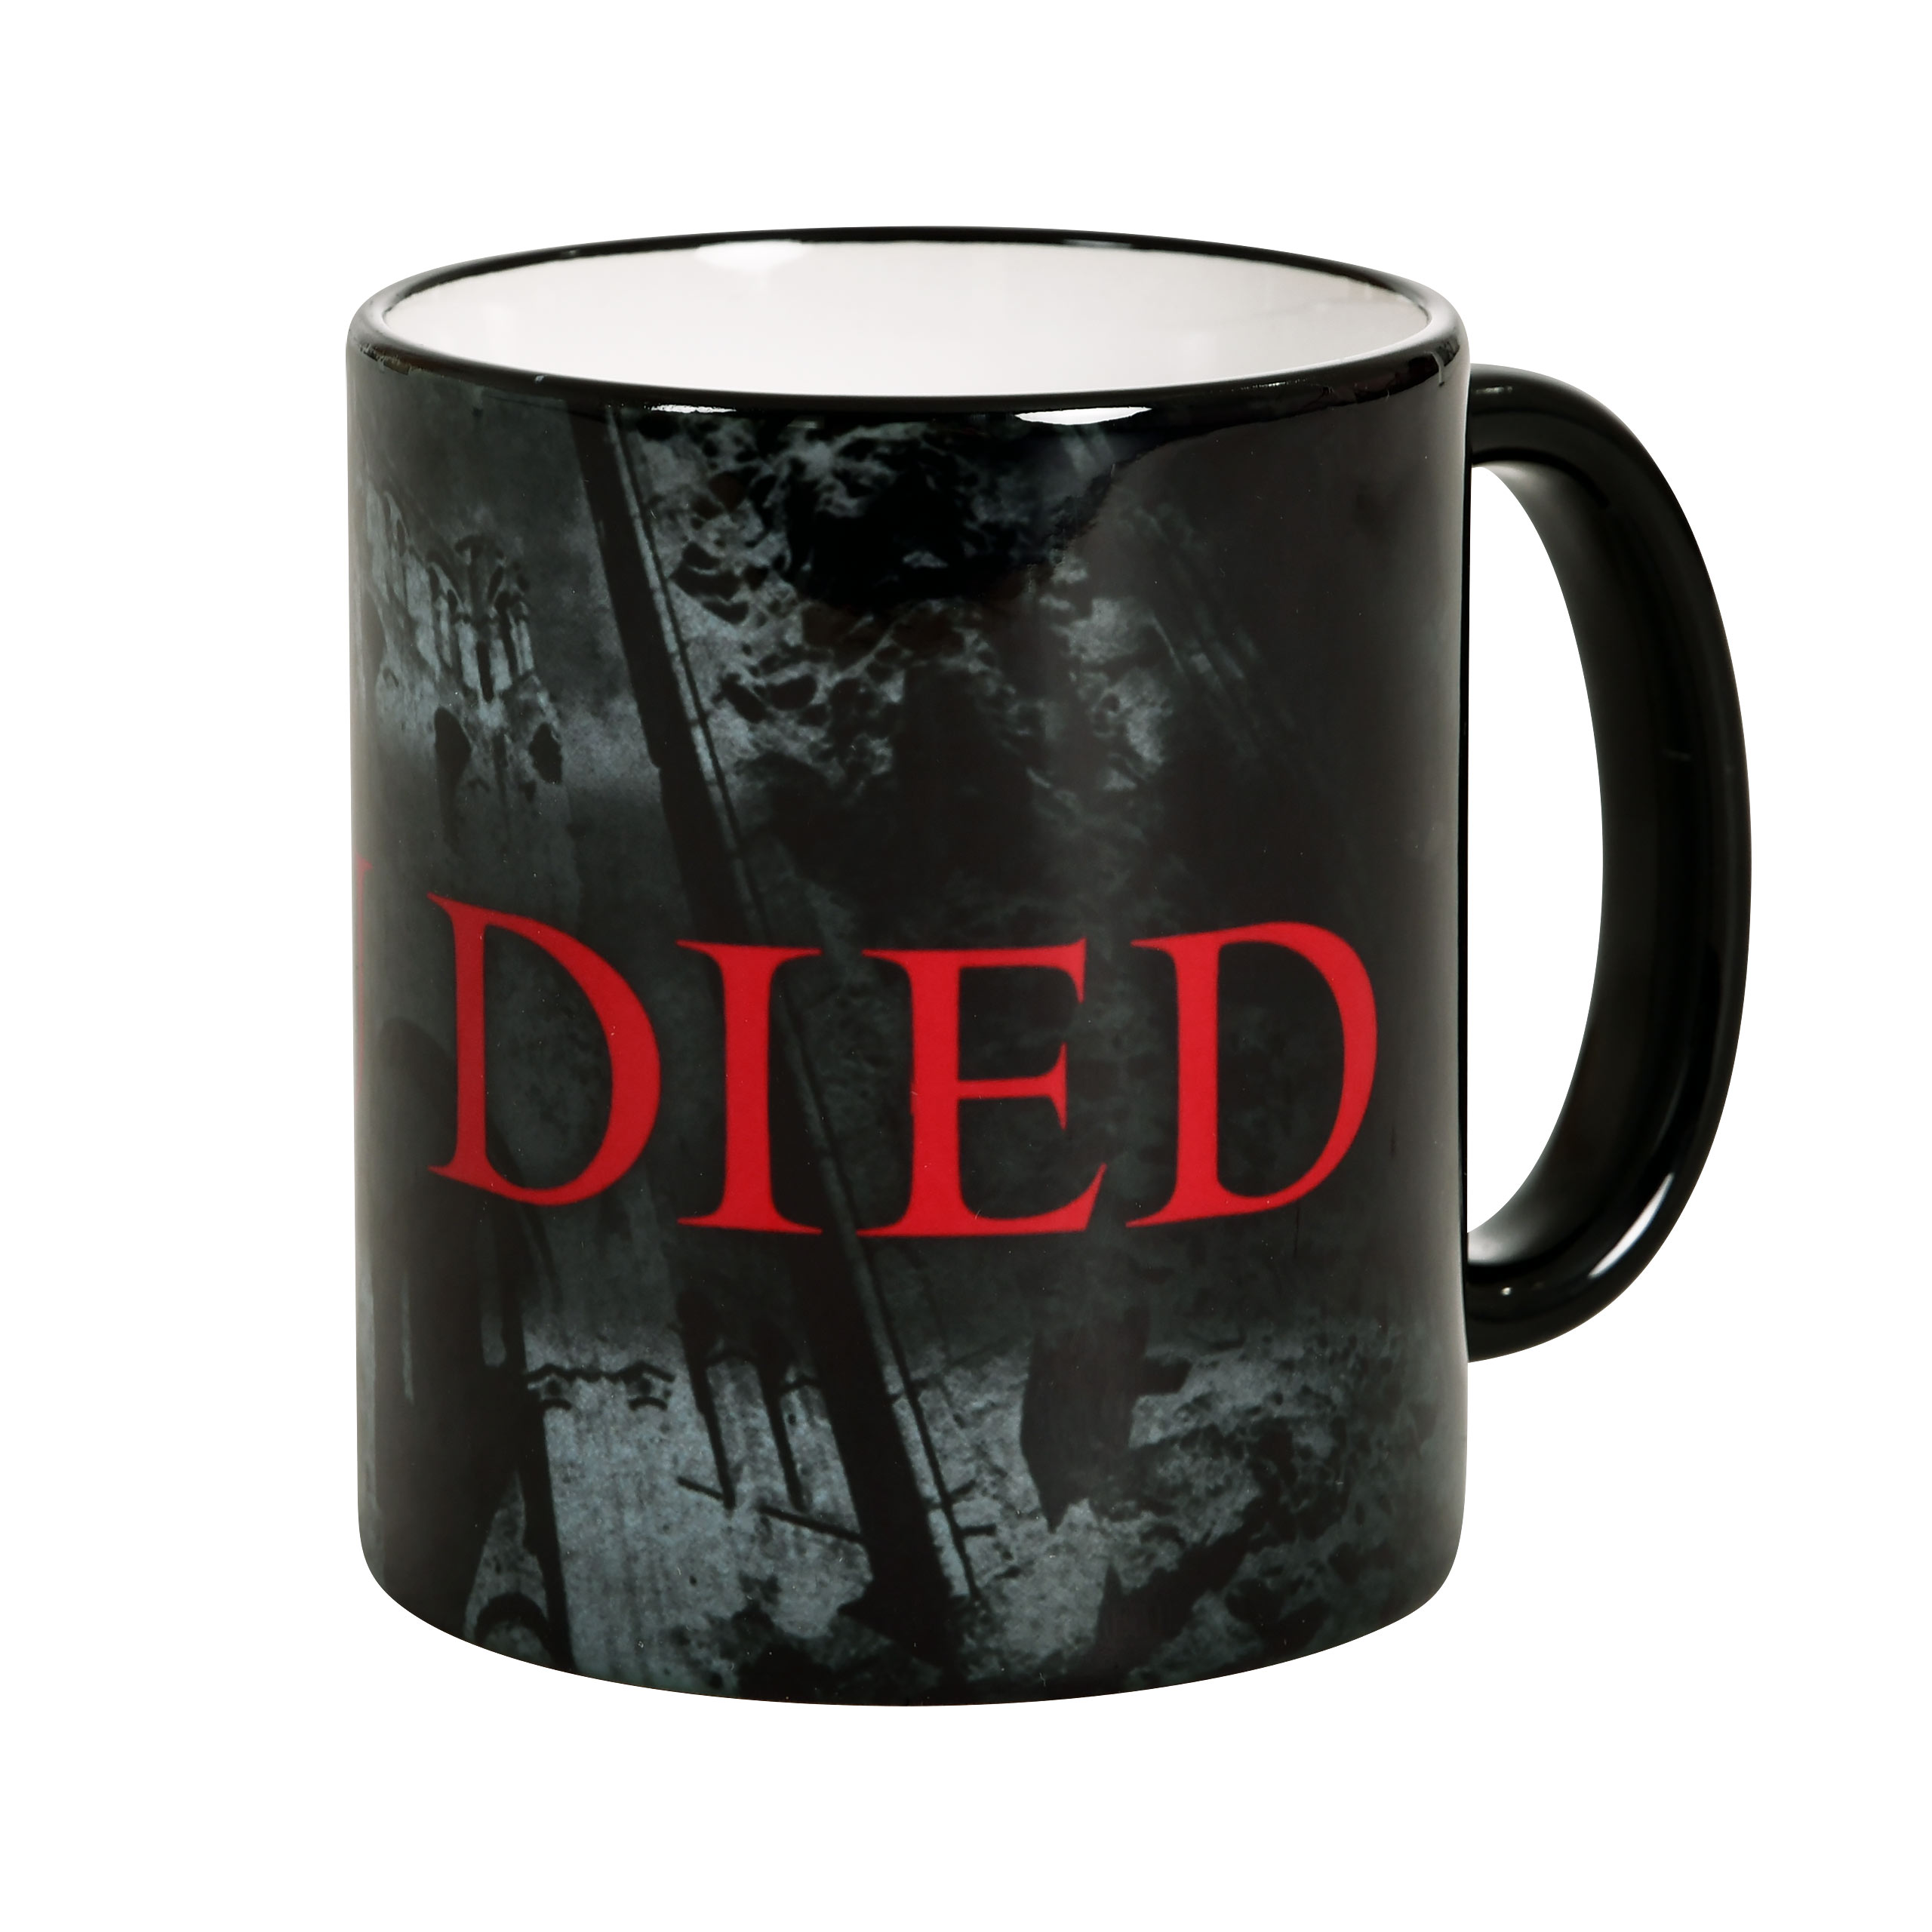 You Died Mug for Elden Ring Fans